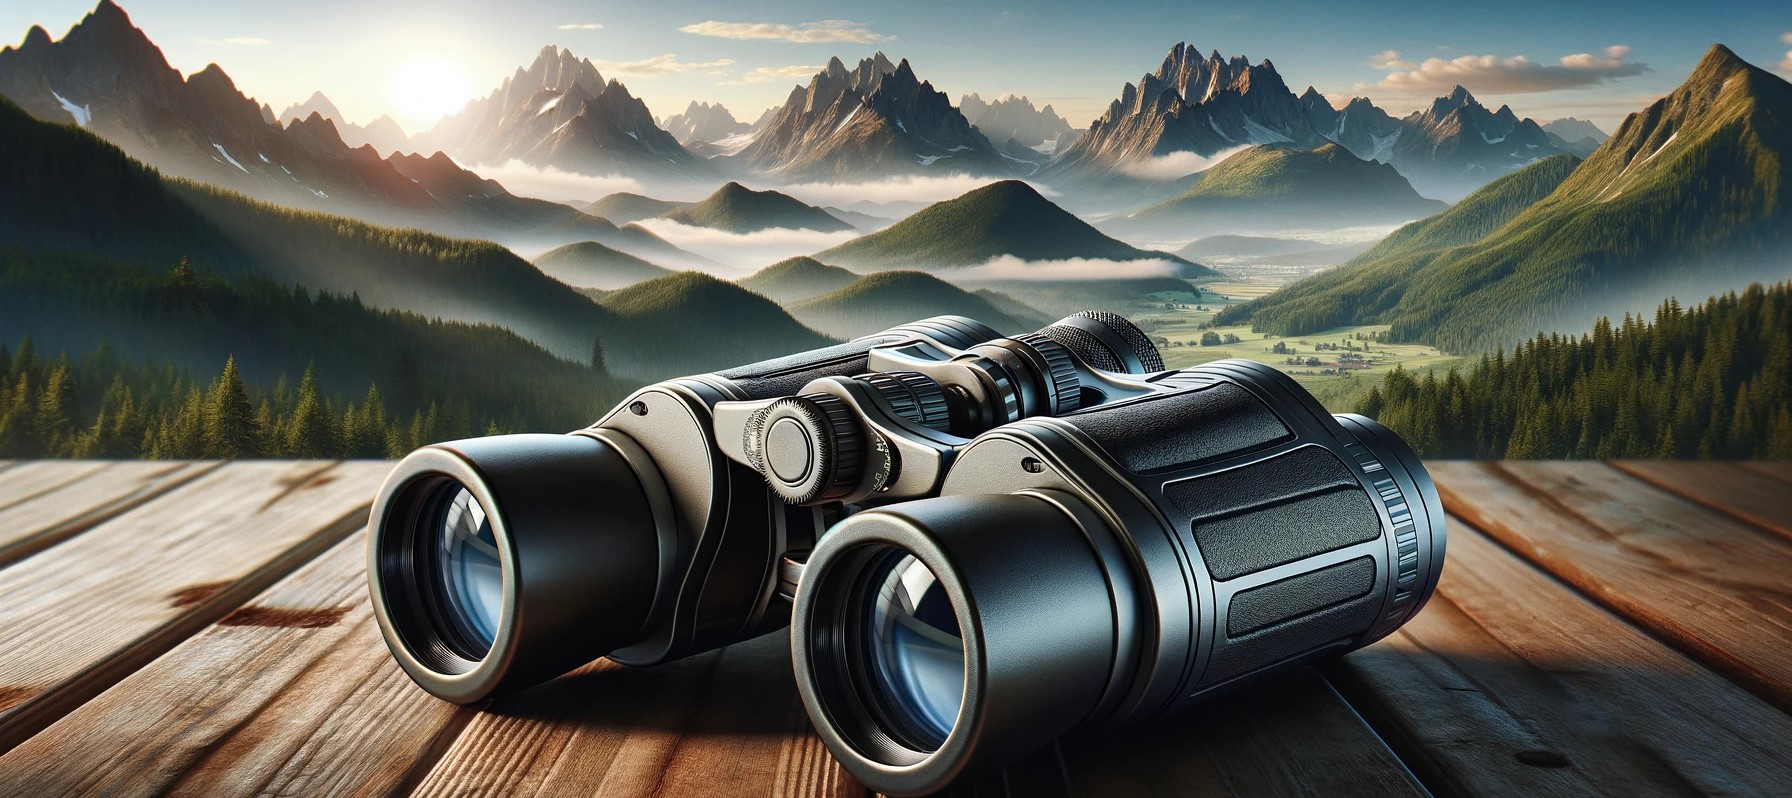 best rangefinding binoculars for hunting